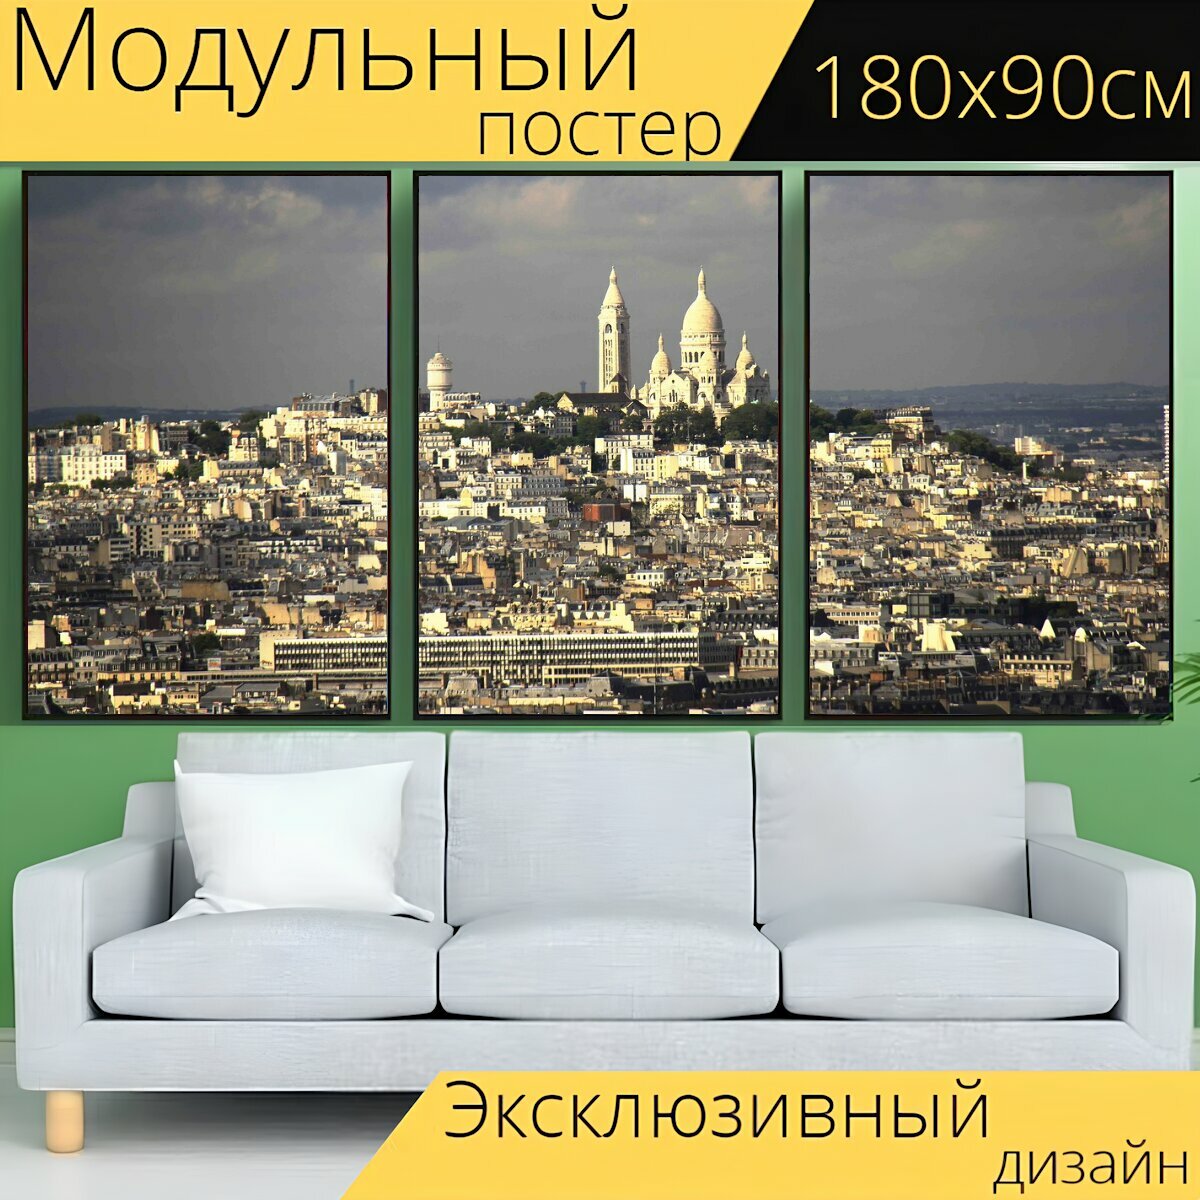 Модульный постер "Городской пейзаж, эйфелева башня, париж" 180 x 90 см. для интерьера